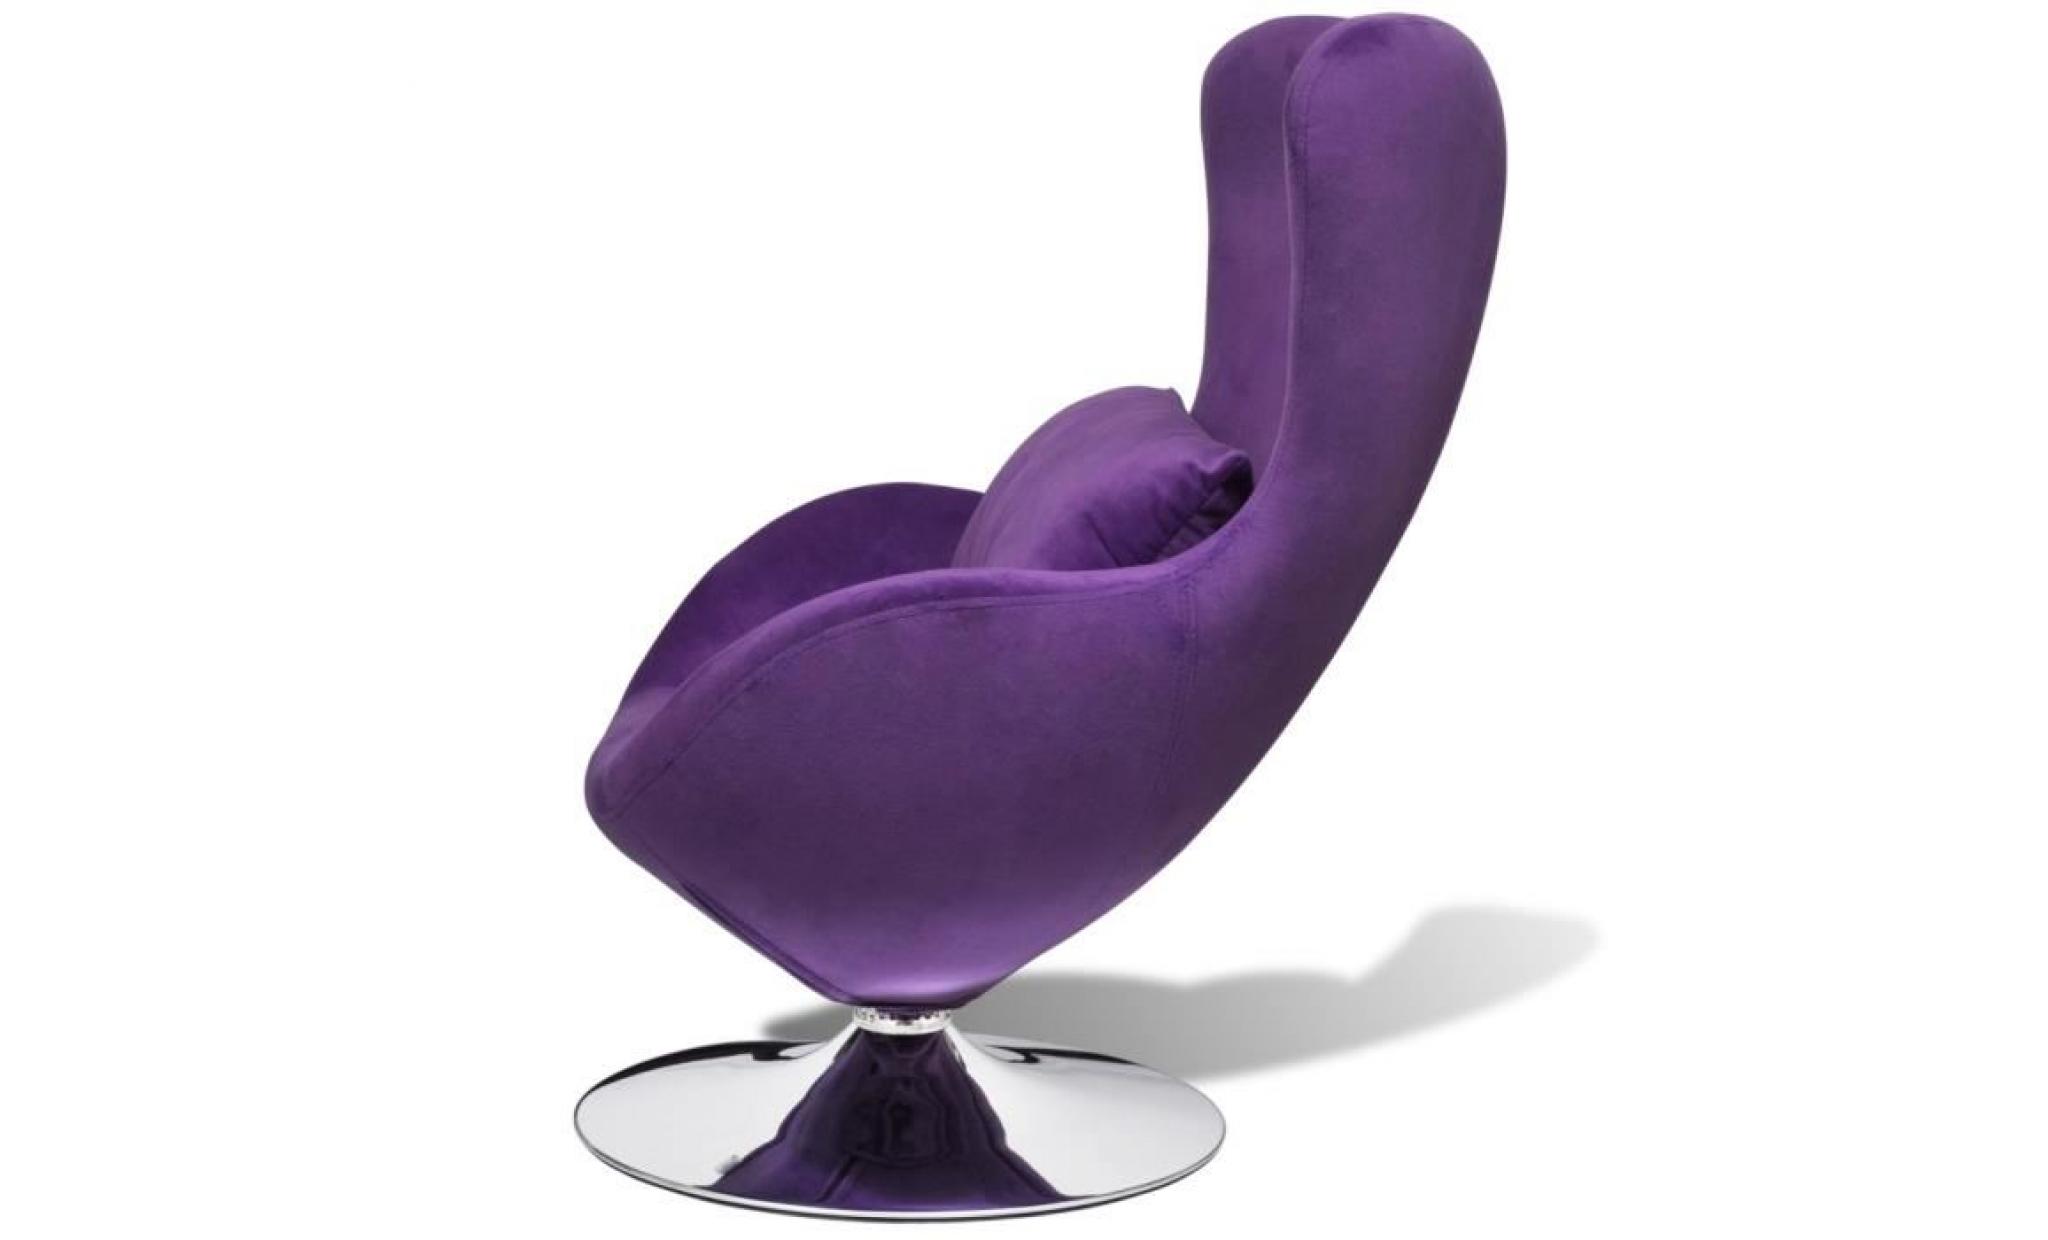 seabrook fauteuil pivotant violet   pas cher